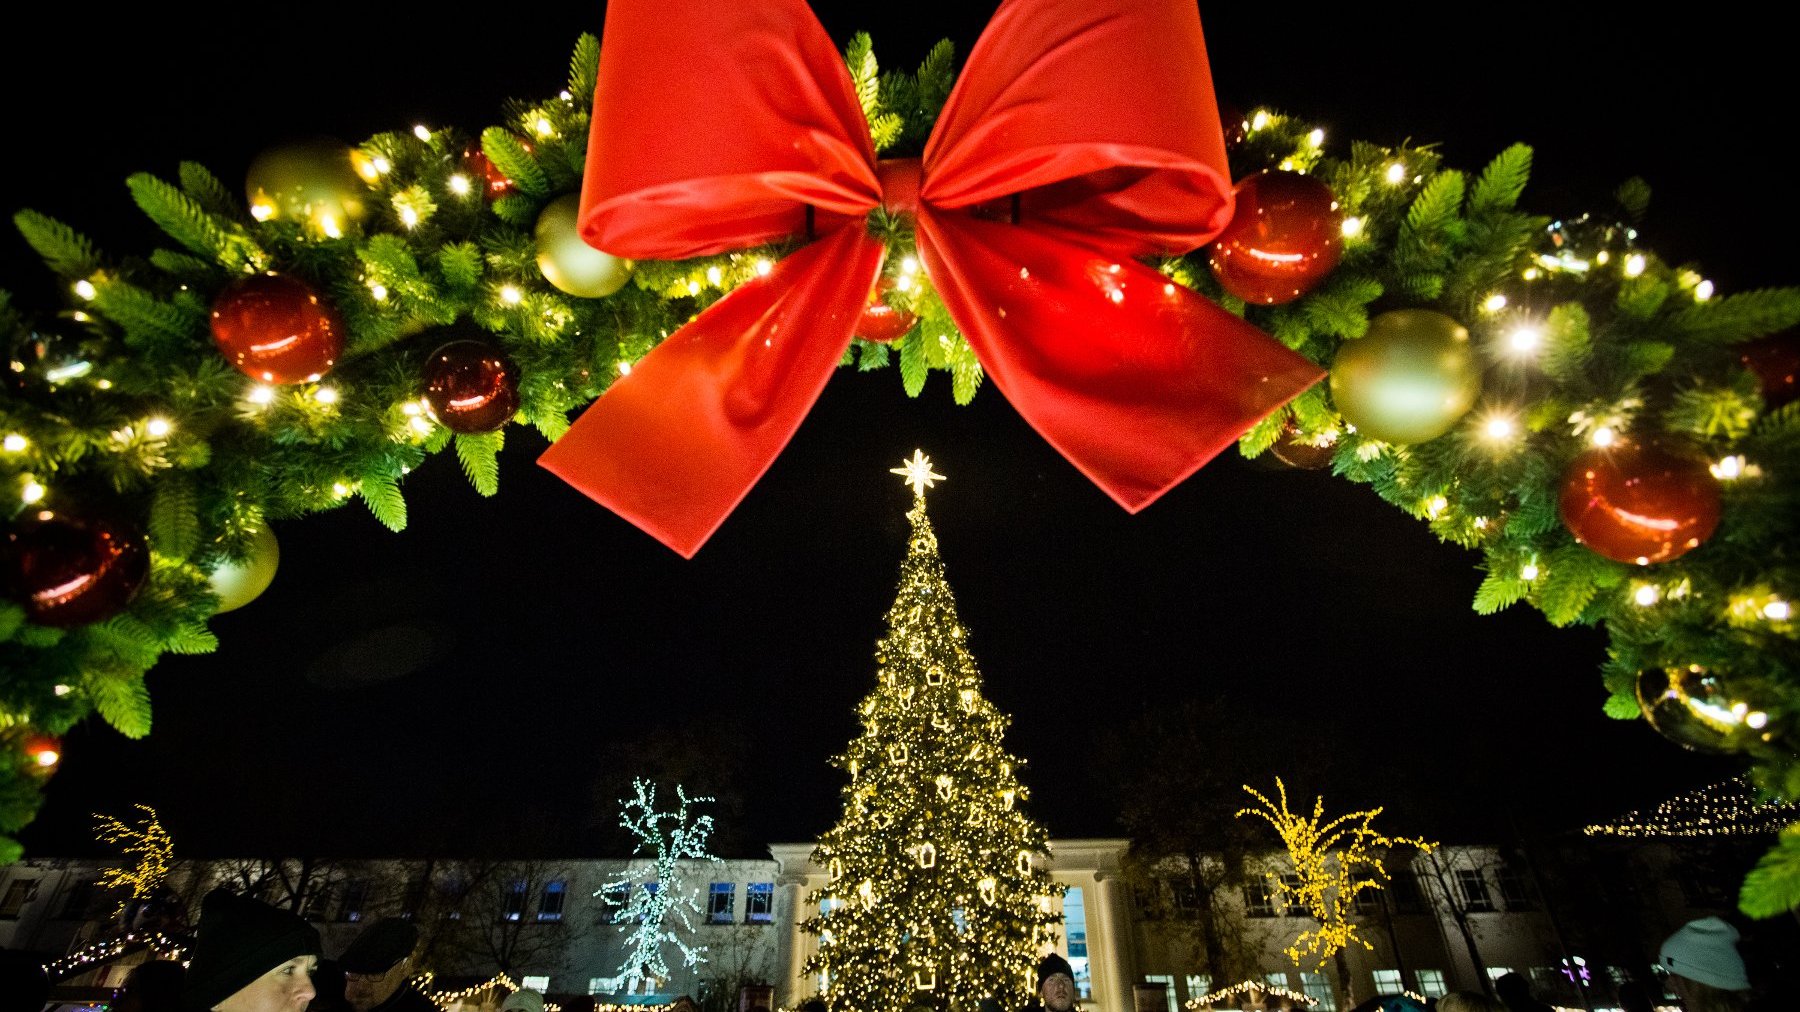 W centrum kadru widać udekorowaną lampkami choinkę, powyżej zaś wielki świąteczny wieniec z kokardą.